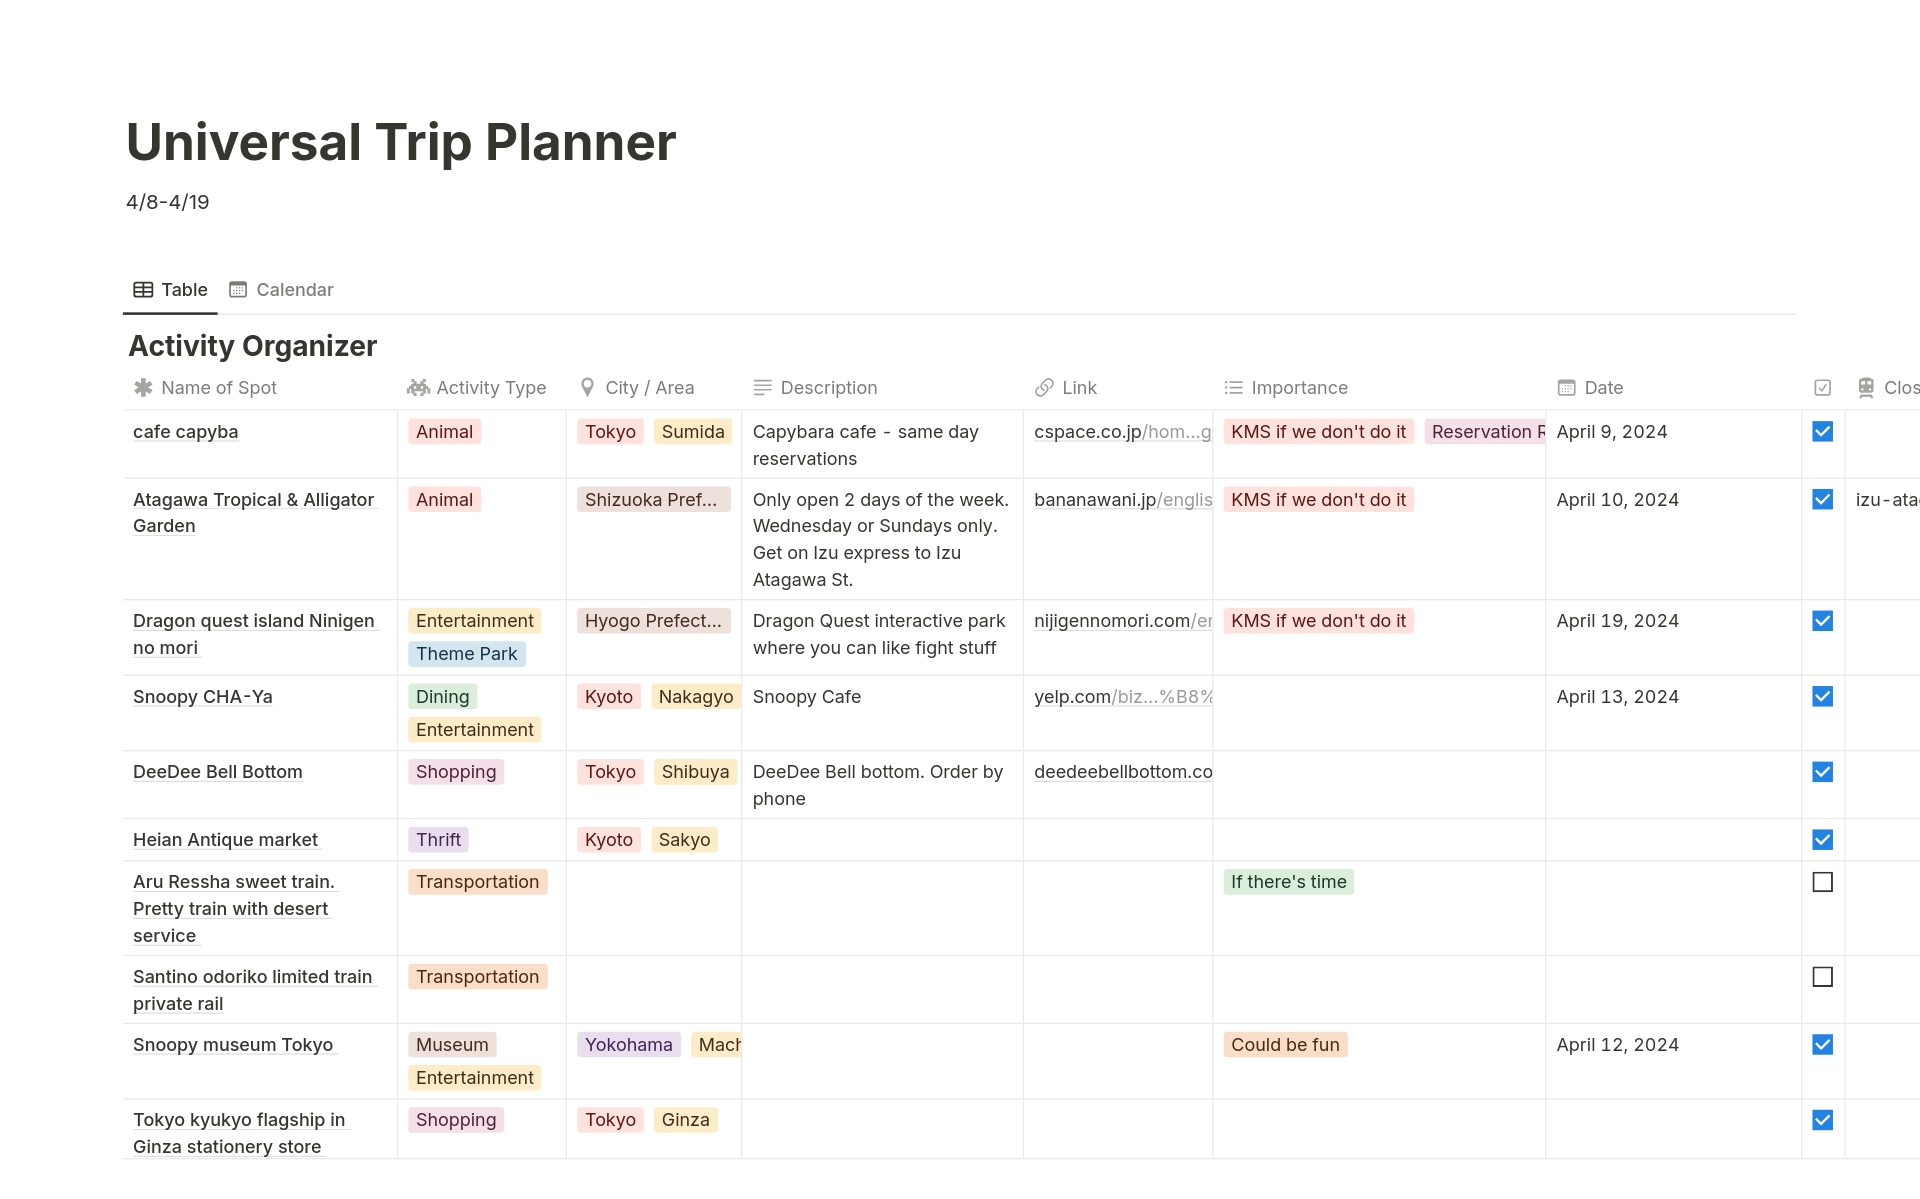 Uma prévia do modelo para Universal Trip Planner